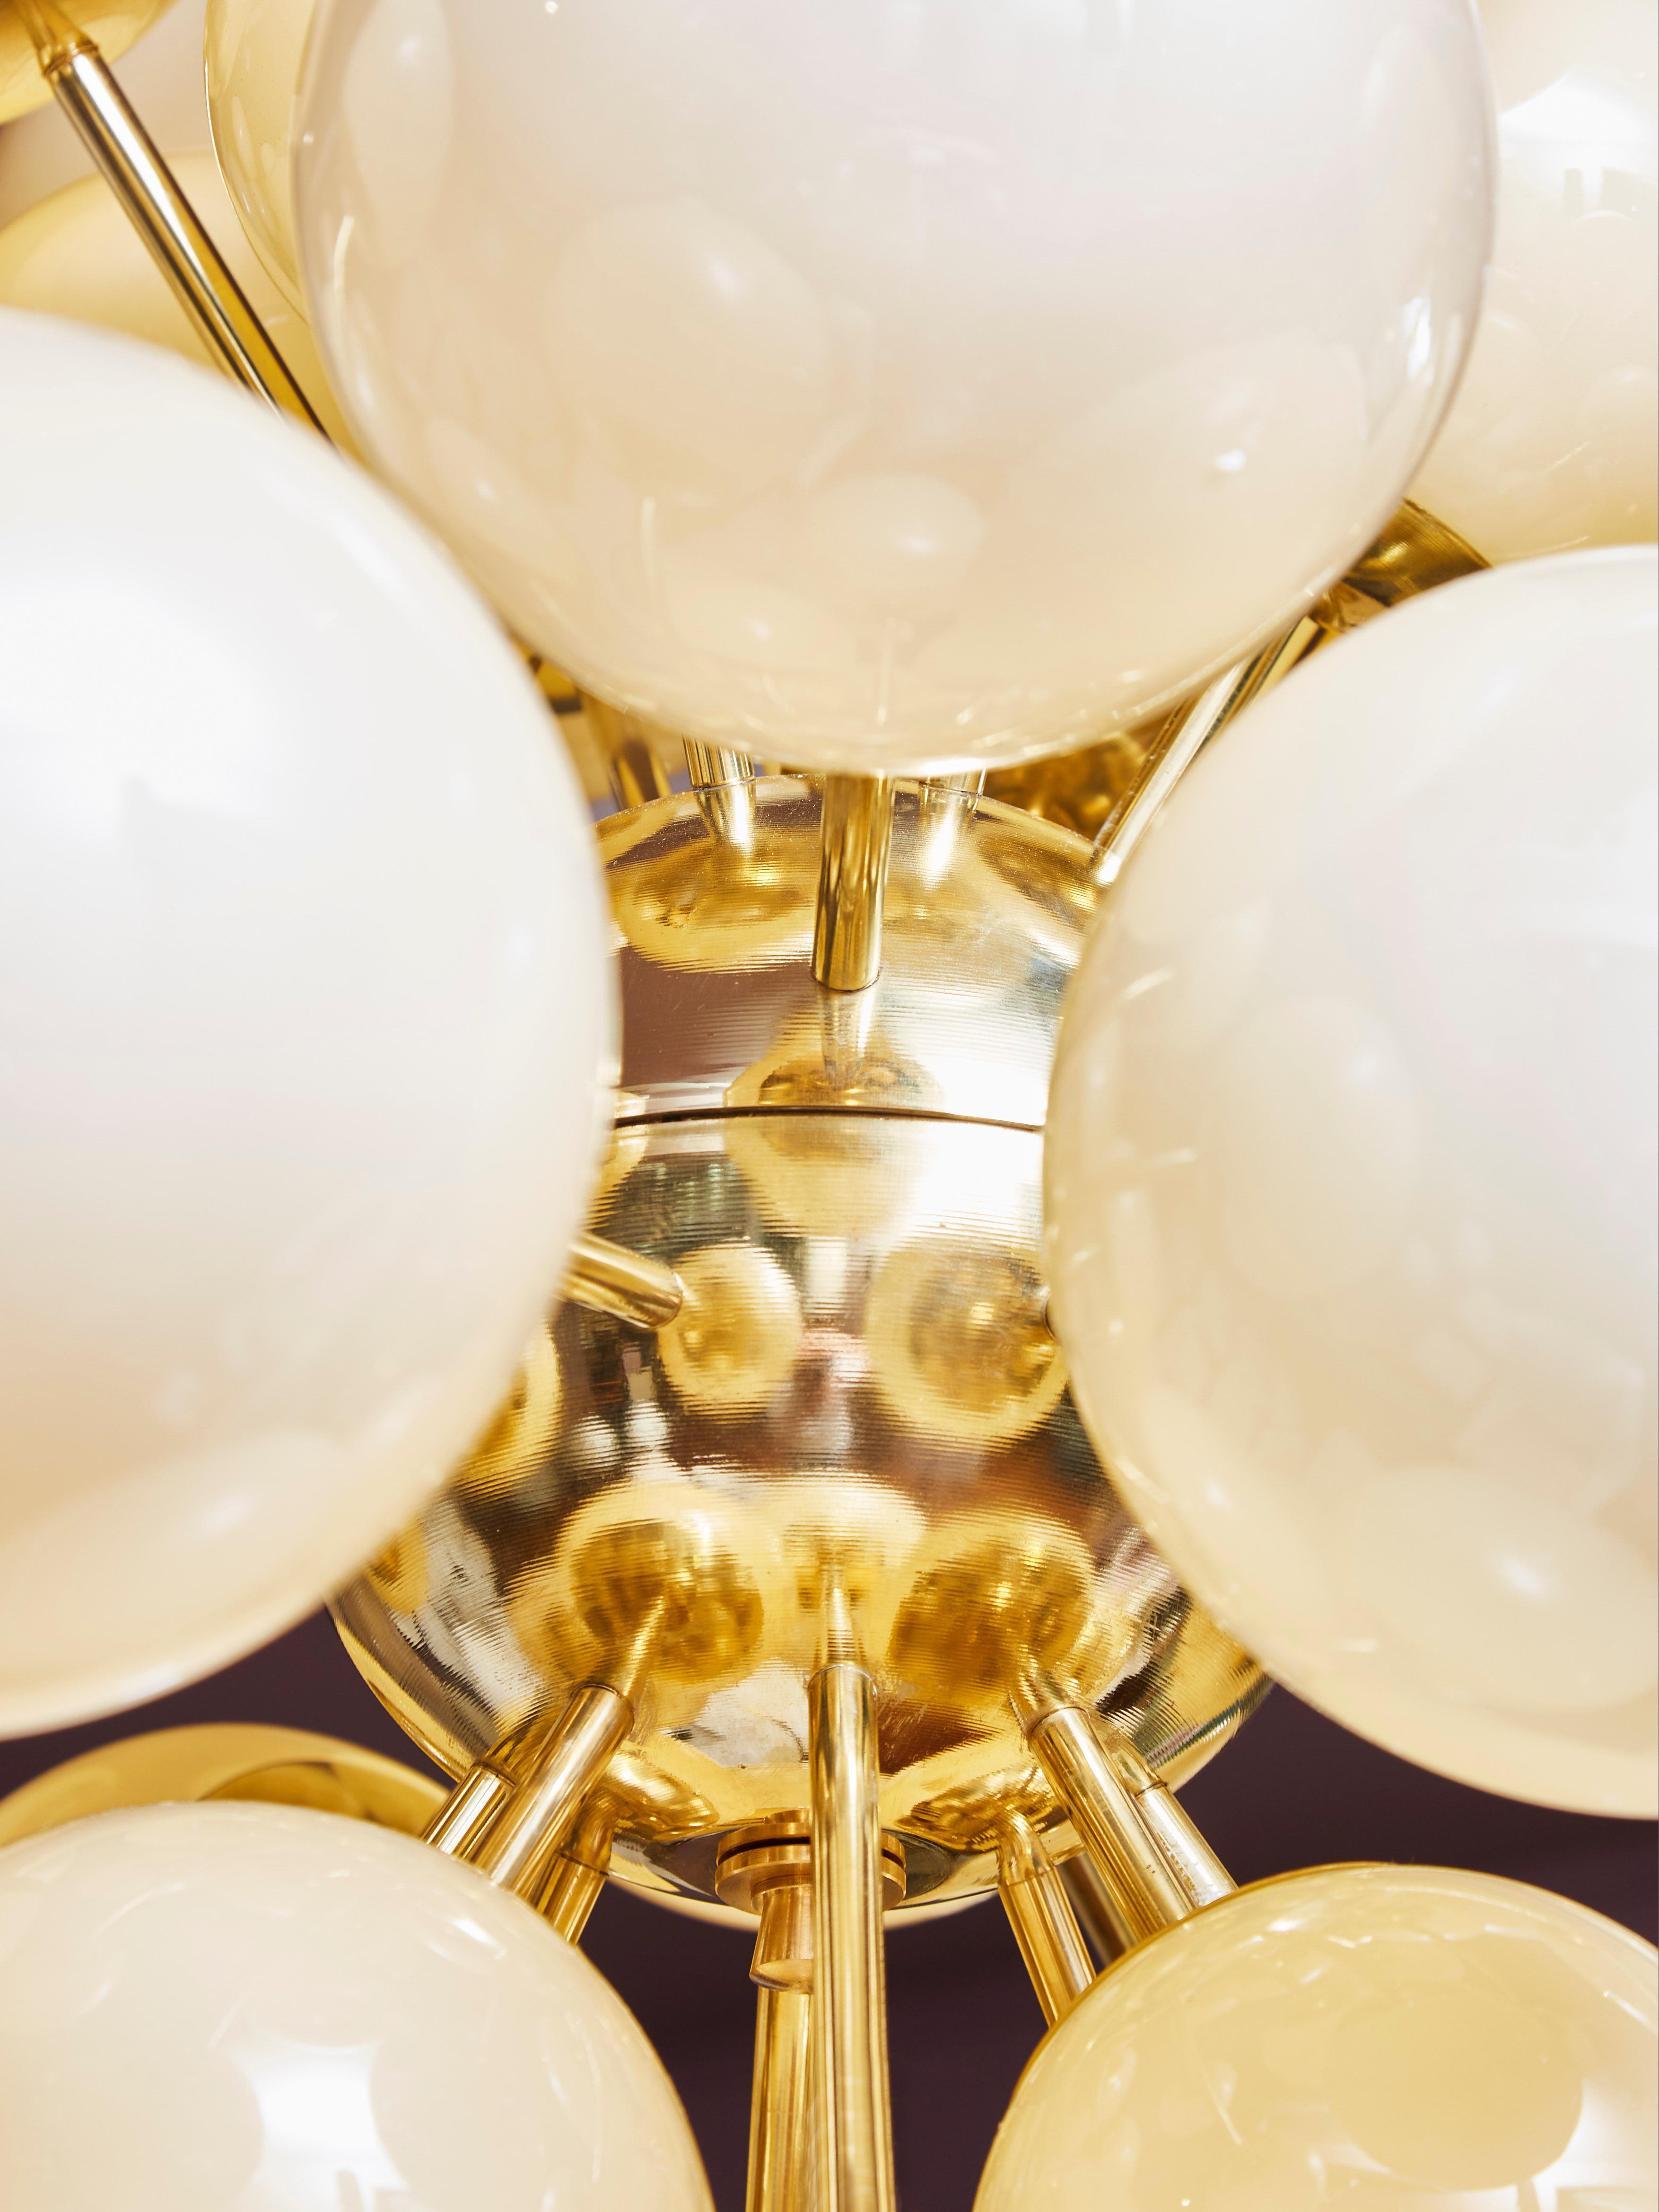 Elégant lustre Sputnik avec des globes en verre opalin éclairés et de différentes tailles, provenant de Murano. Structure en laiton. Piqûres de diamant Miroir.
Création par le Studio Glustin.
 